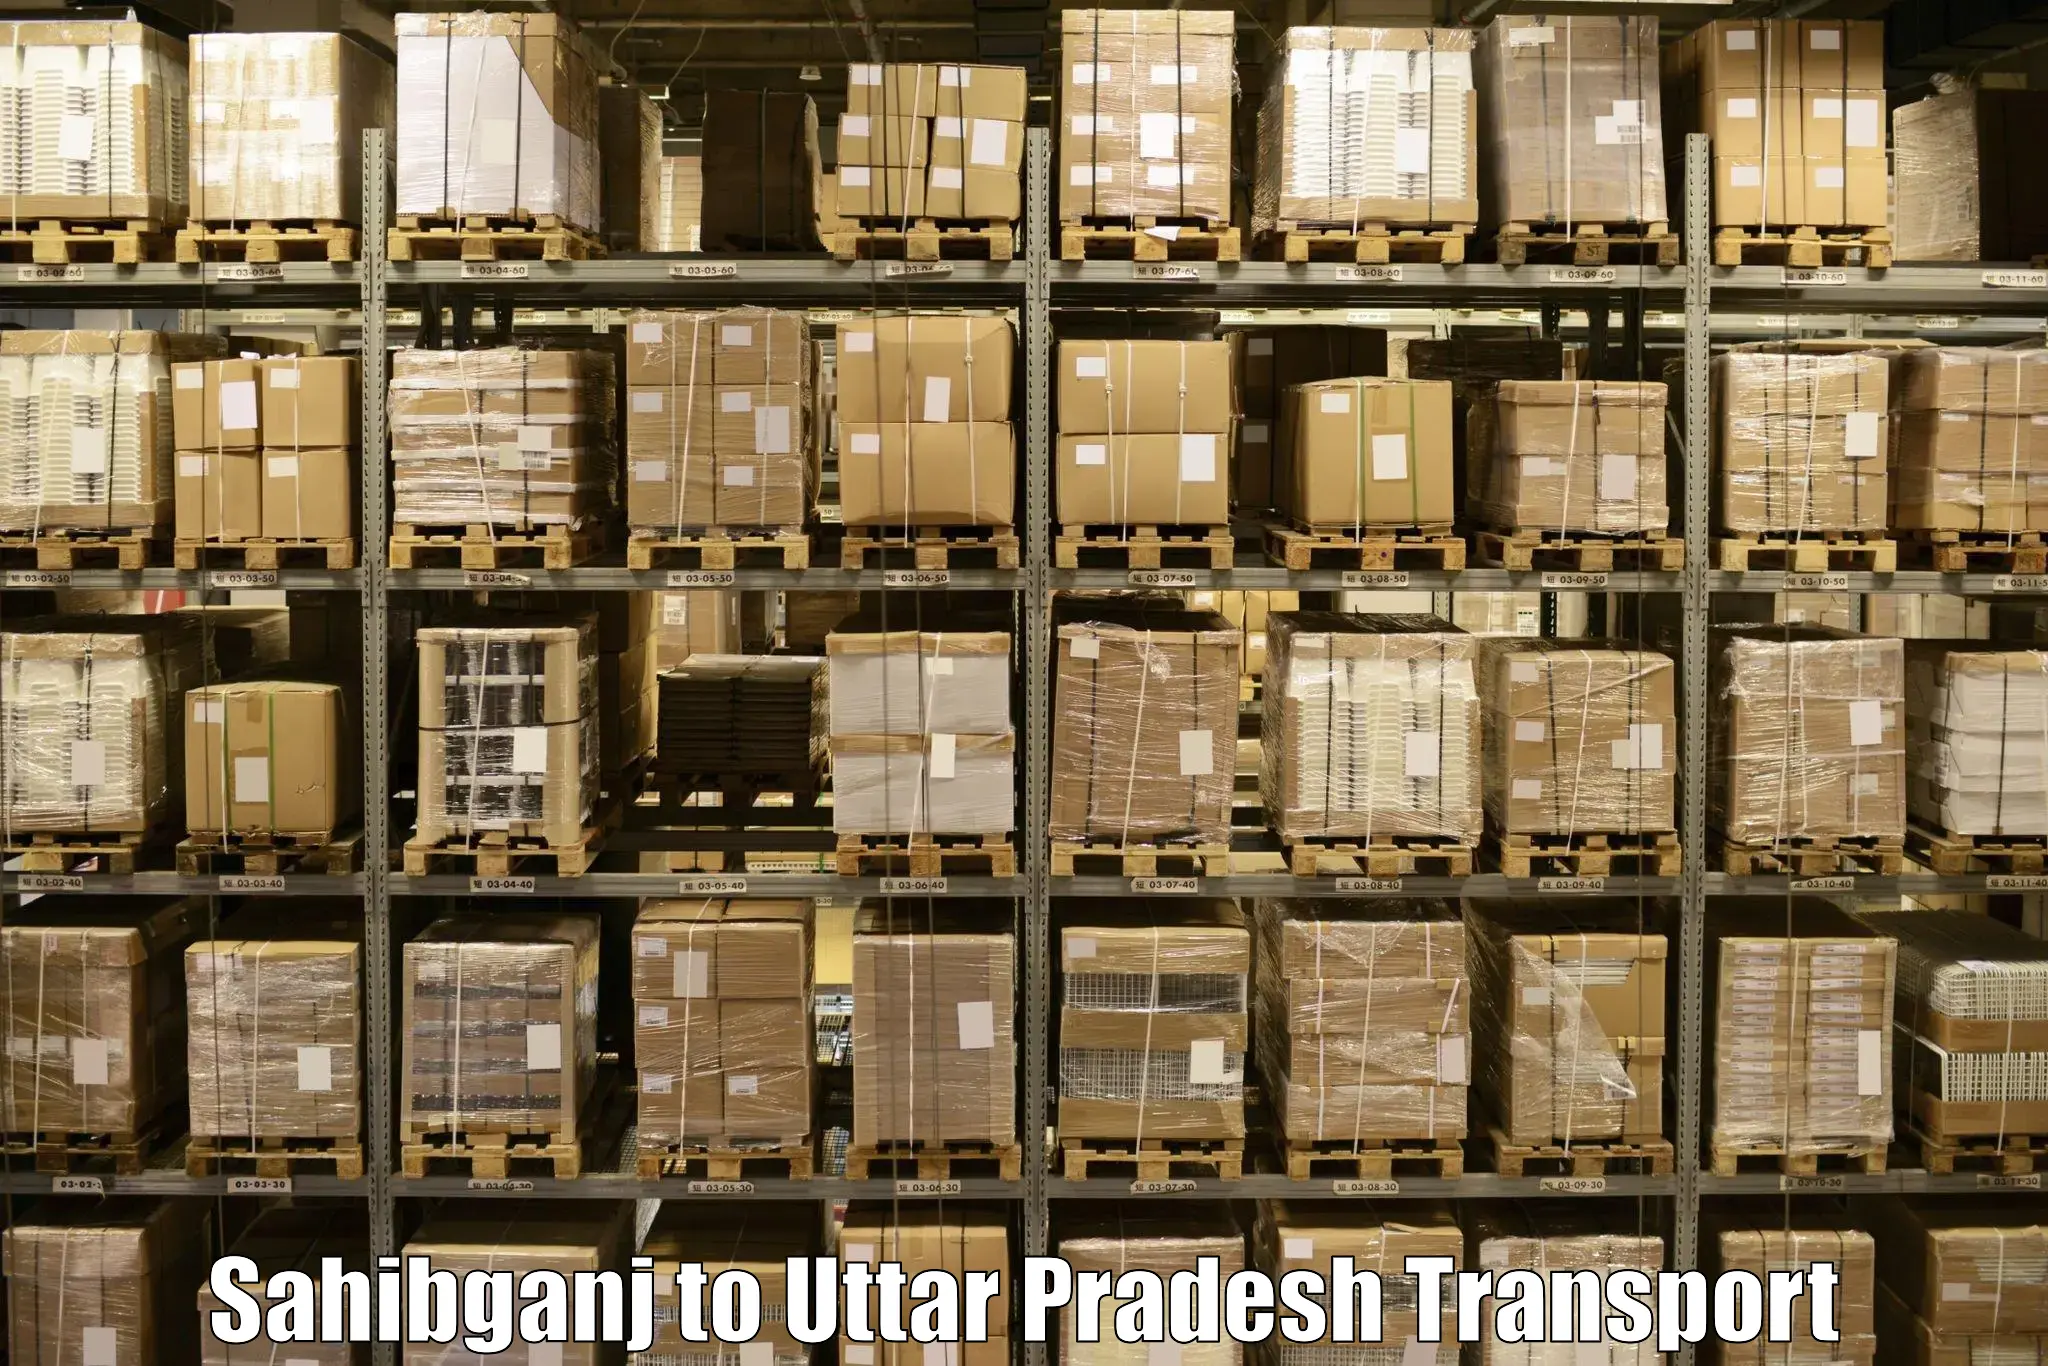 Cargo transportation services Sahibganj to Shahjahanpur